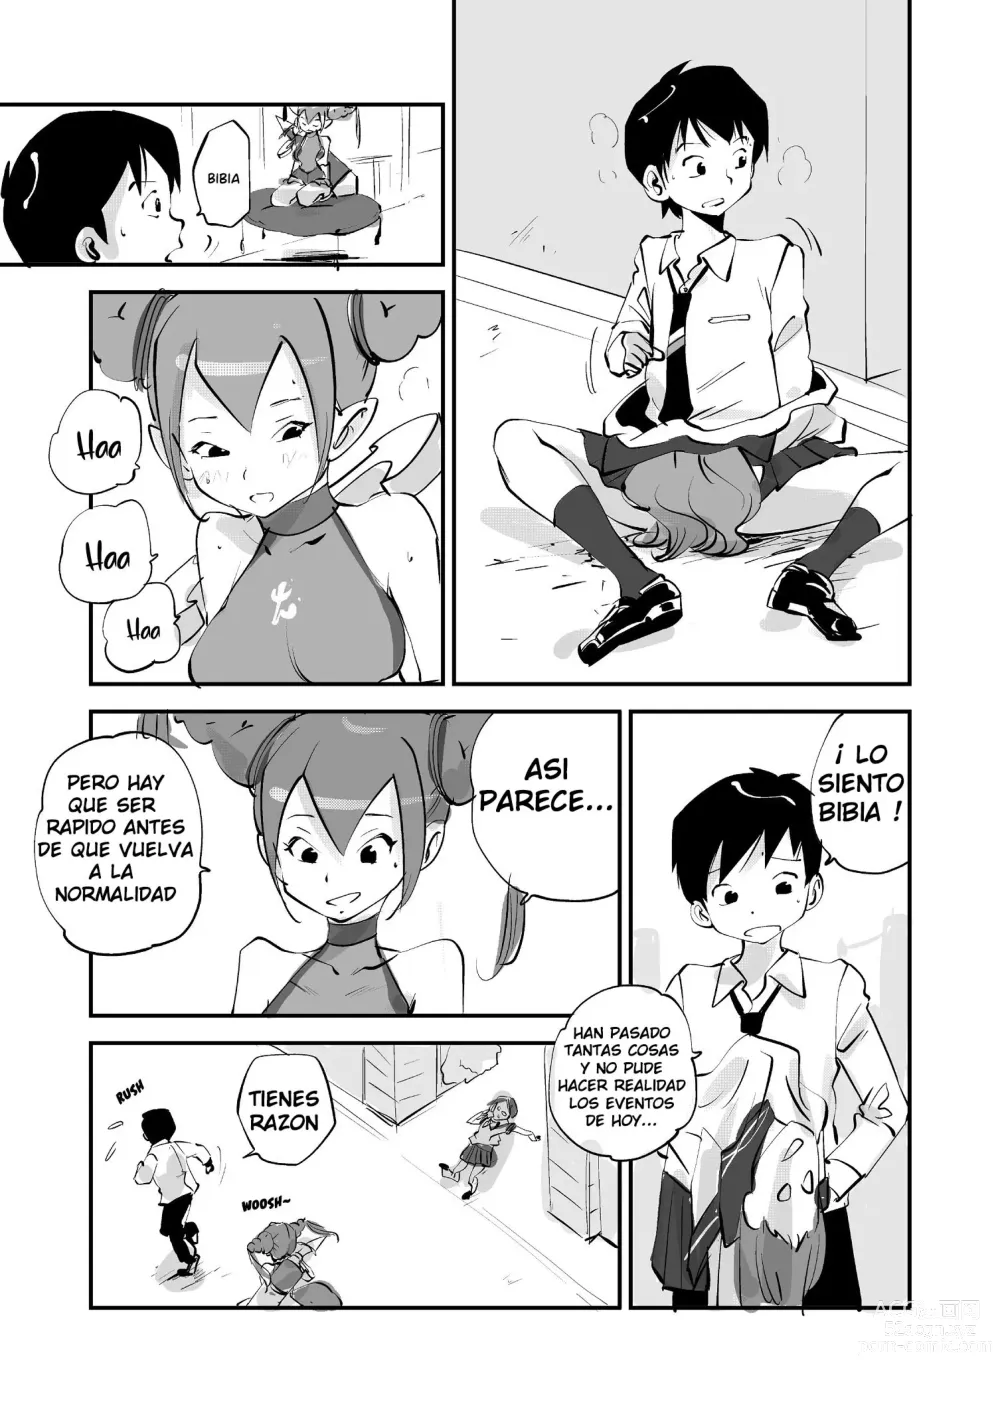 Page 208 of doujinshi Bibia Saikou ka yo!